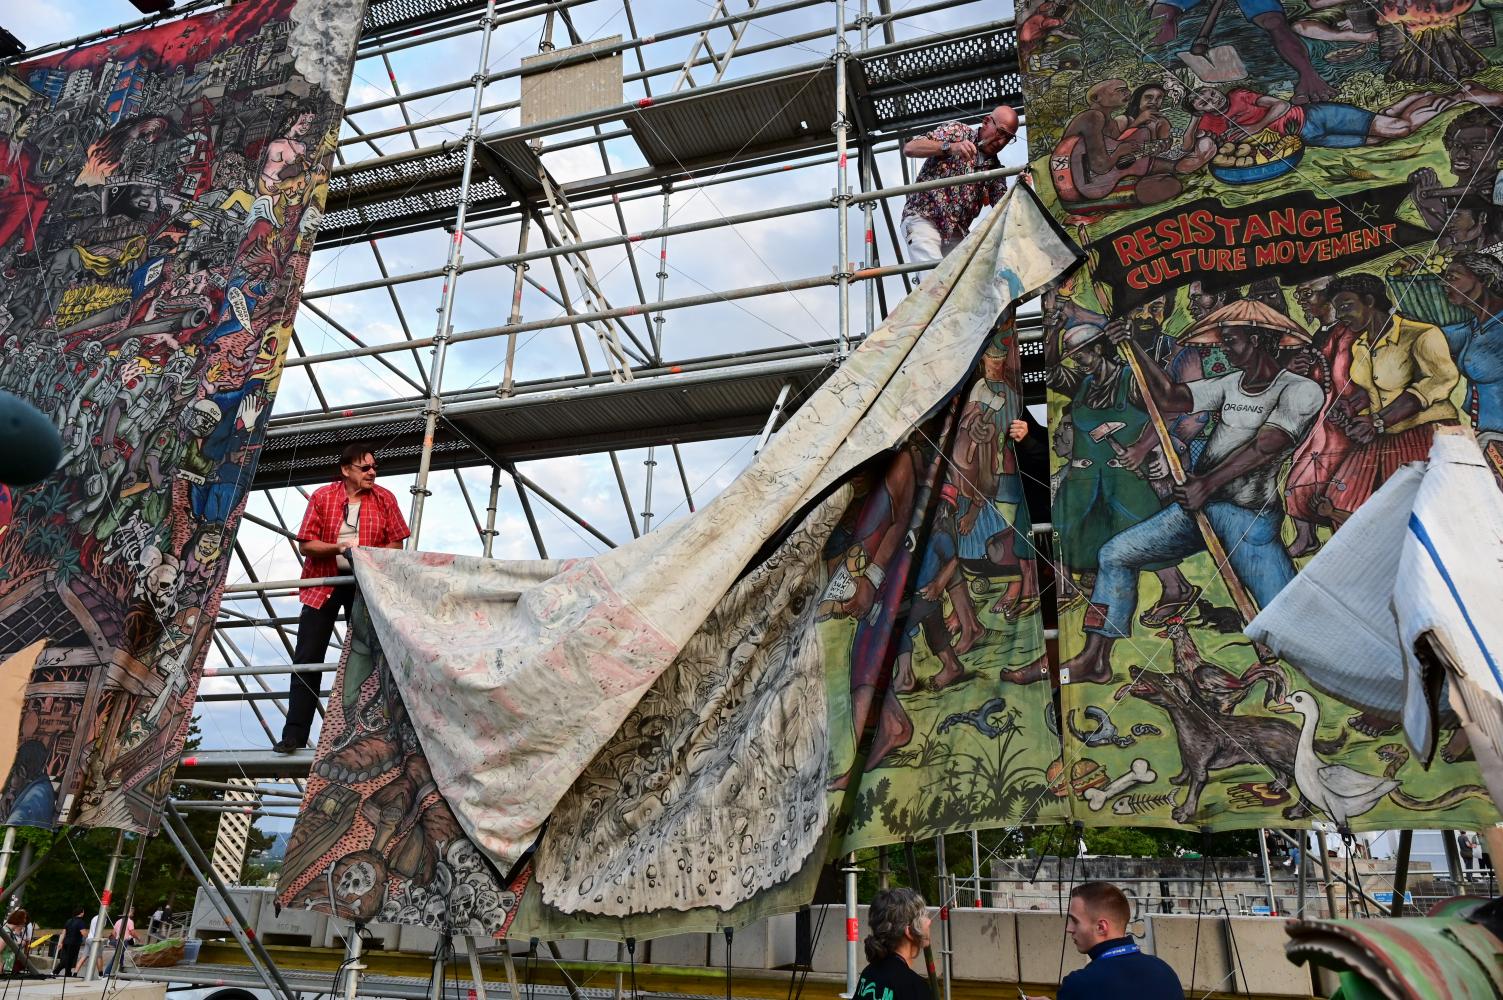 Documenta-Mitarbeiter bauen am 21. Juni das umstrittene Großbanner "People's Justice" des indonesischen Künstlerkollektivs Taring Padi auf dem Kasseler Friedrichsplatz ab